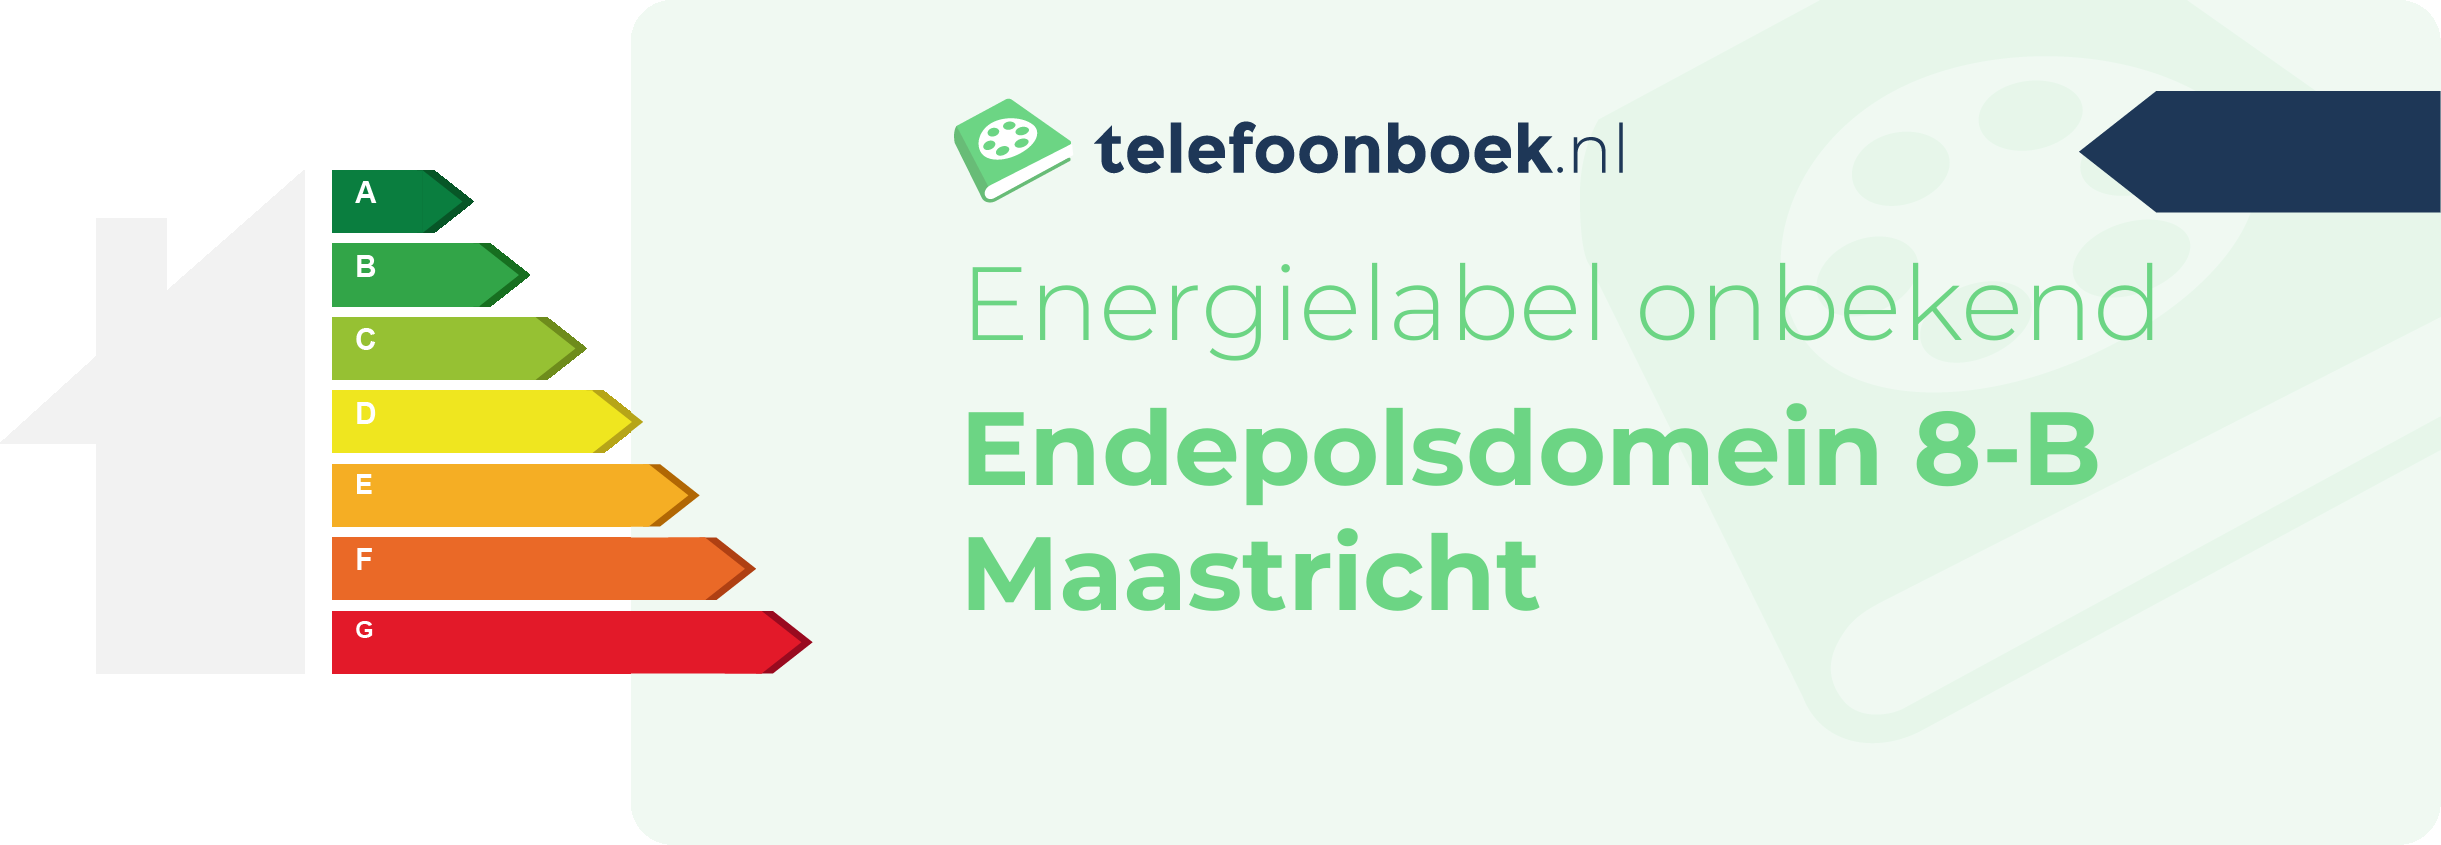 Energielabel Endepolsdomein 8-B Maastricht